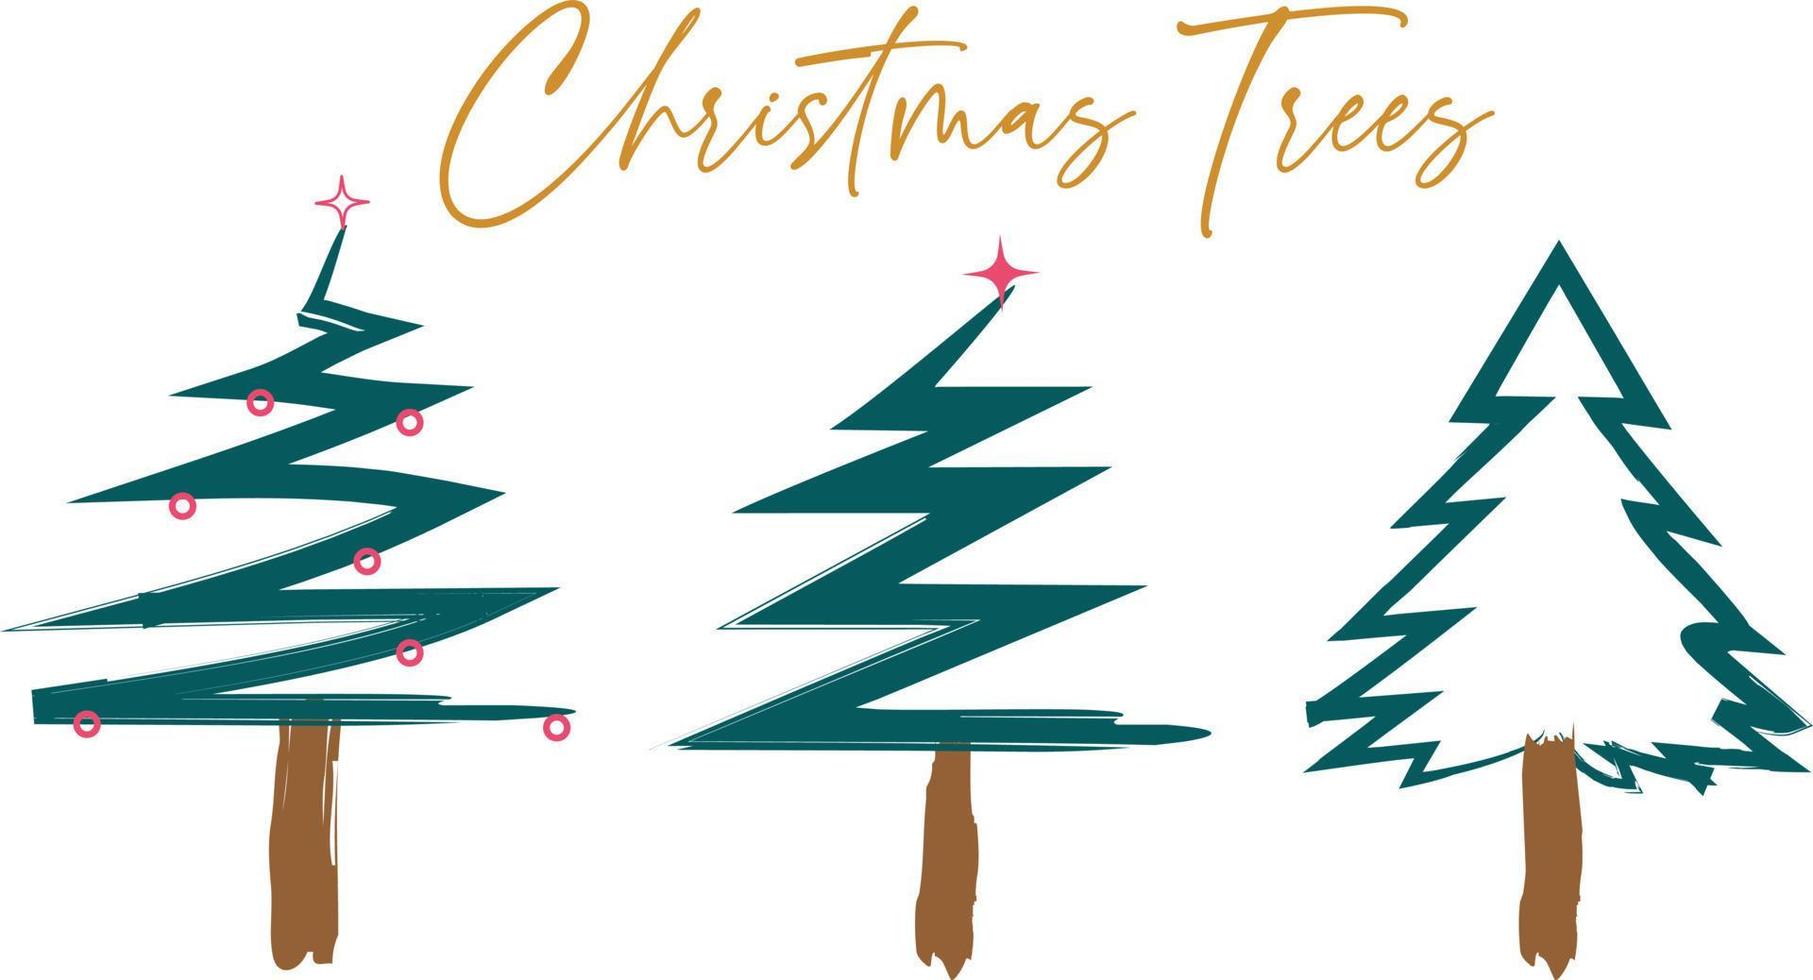 samling av jul dekorationer, paintbrush stil söt ritad för hand. jul skog skog motiv. vektor